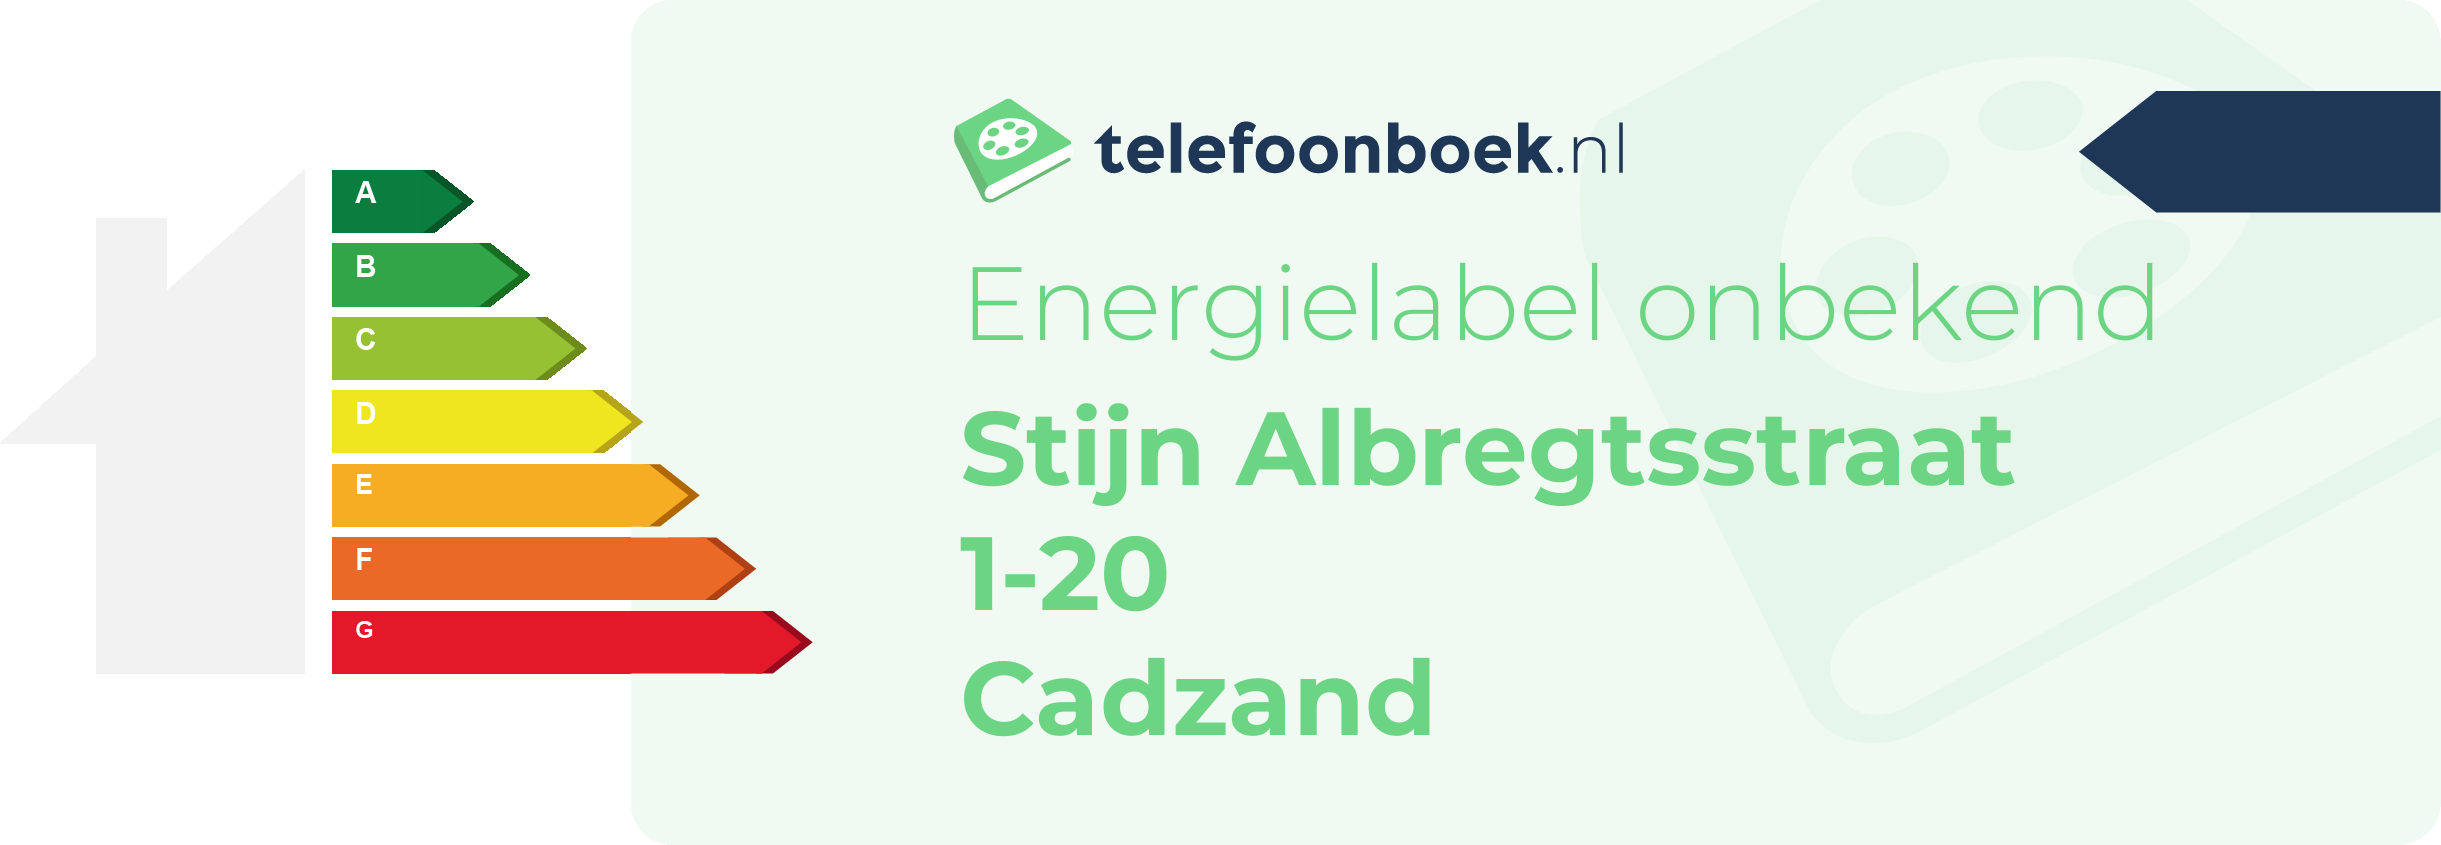 Energielabel Stijn Albregtsstraat 1-20 Cadzand